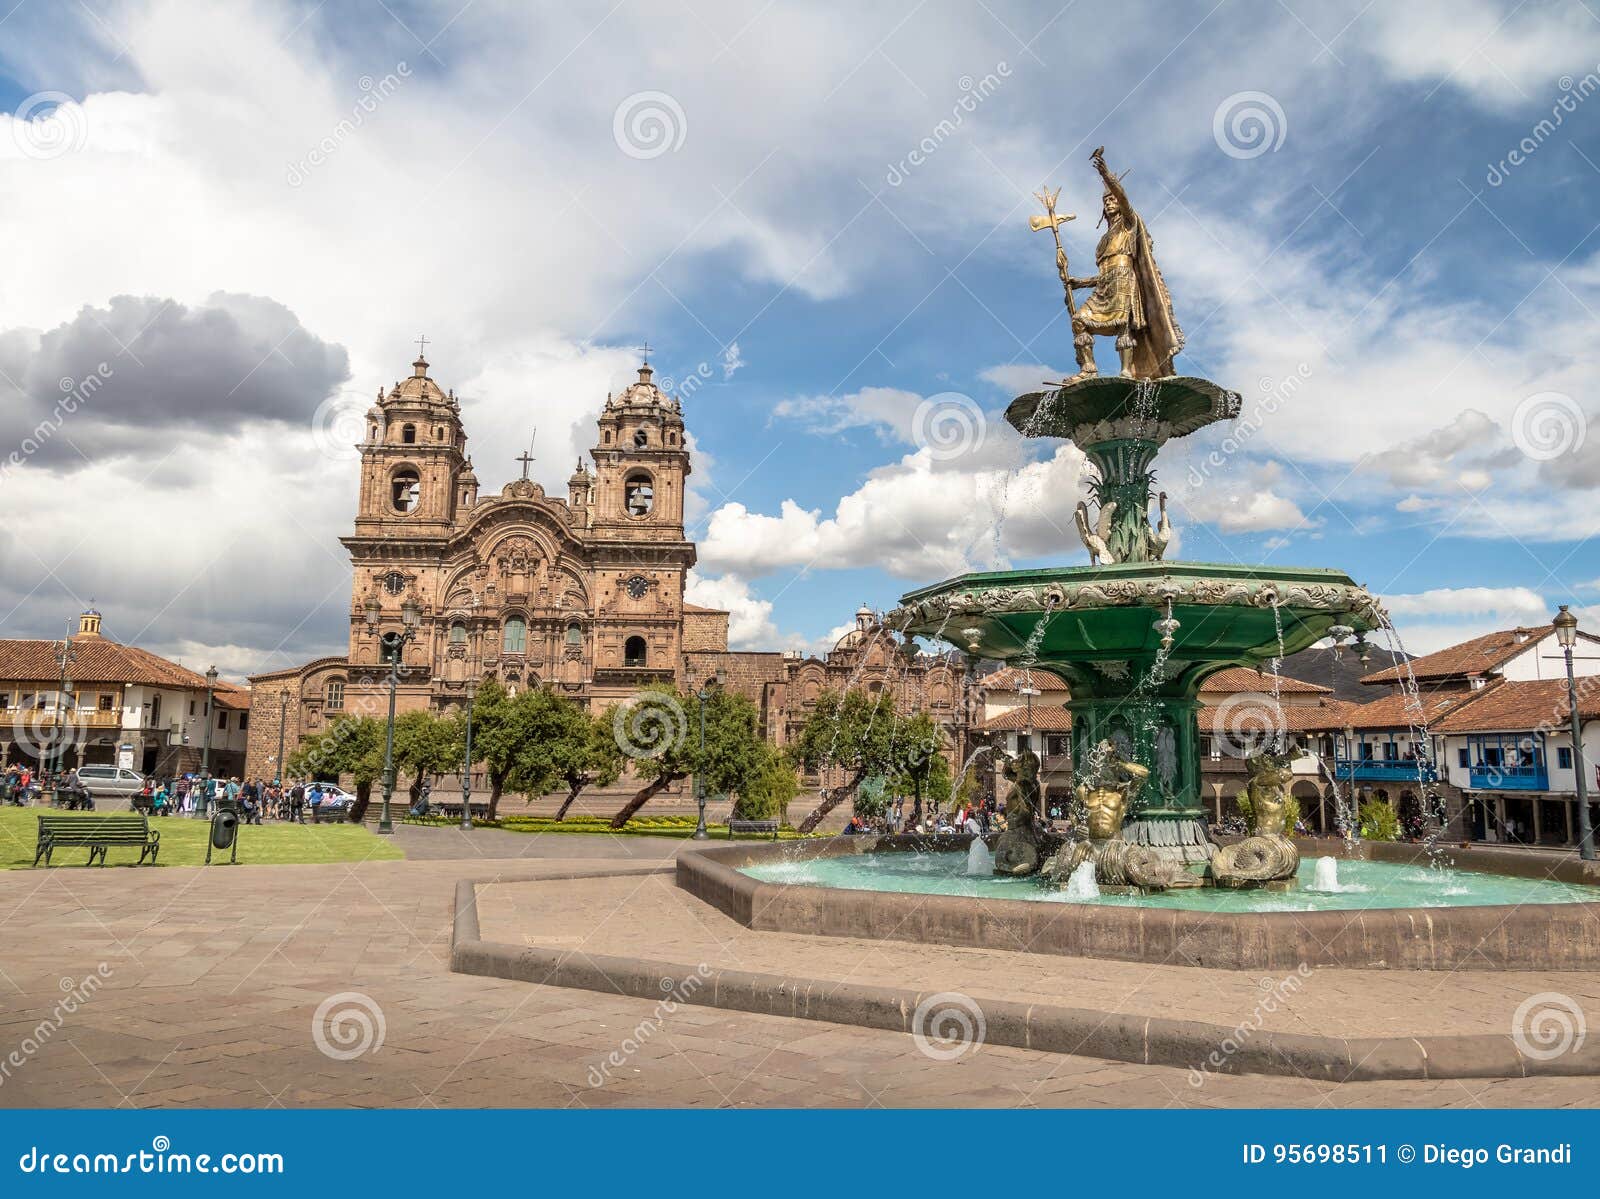 plaza de armas with inca fountain and compania de jesus church - cusco, peru